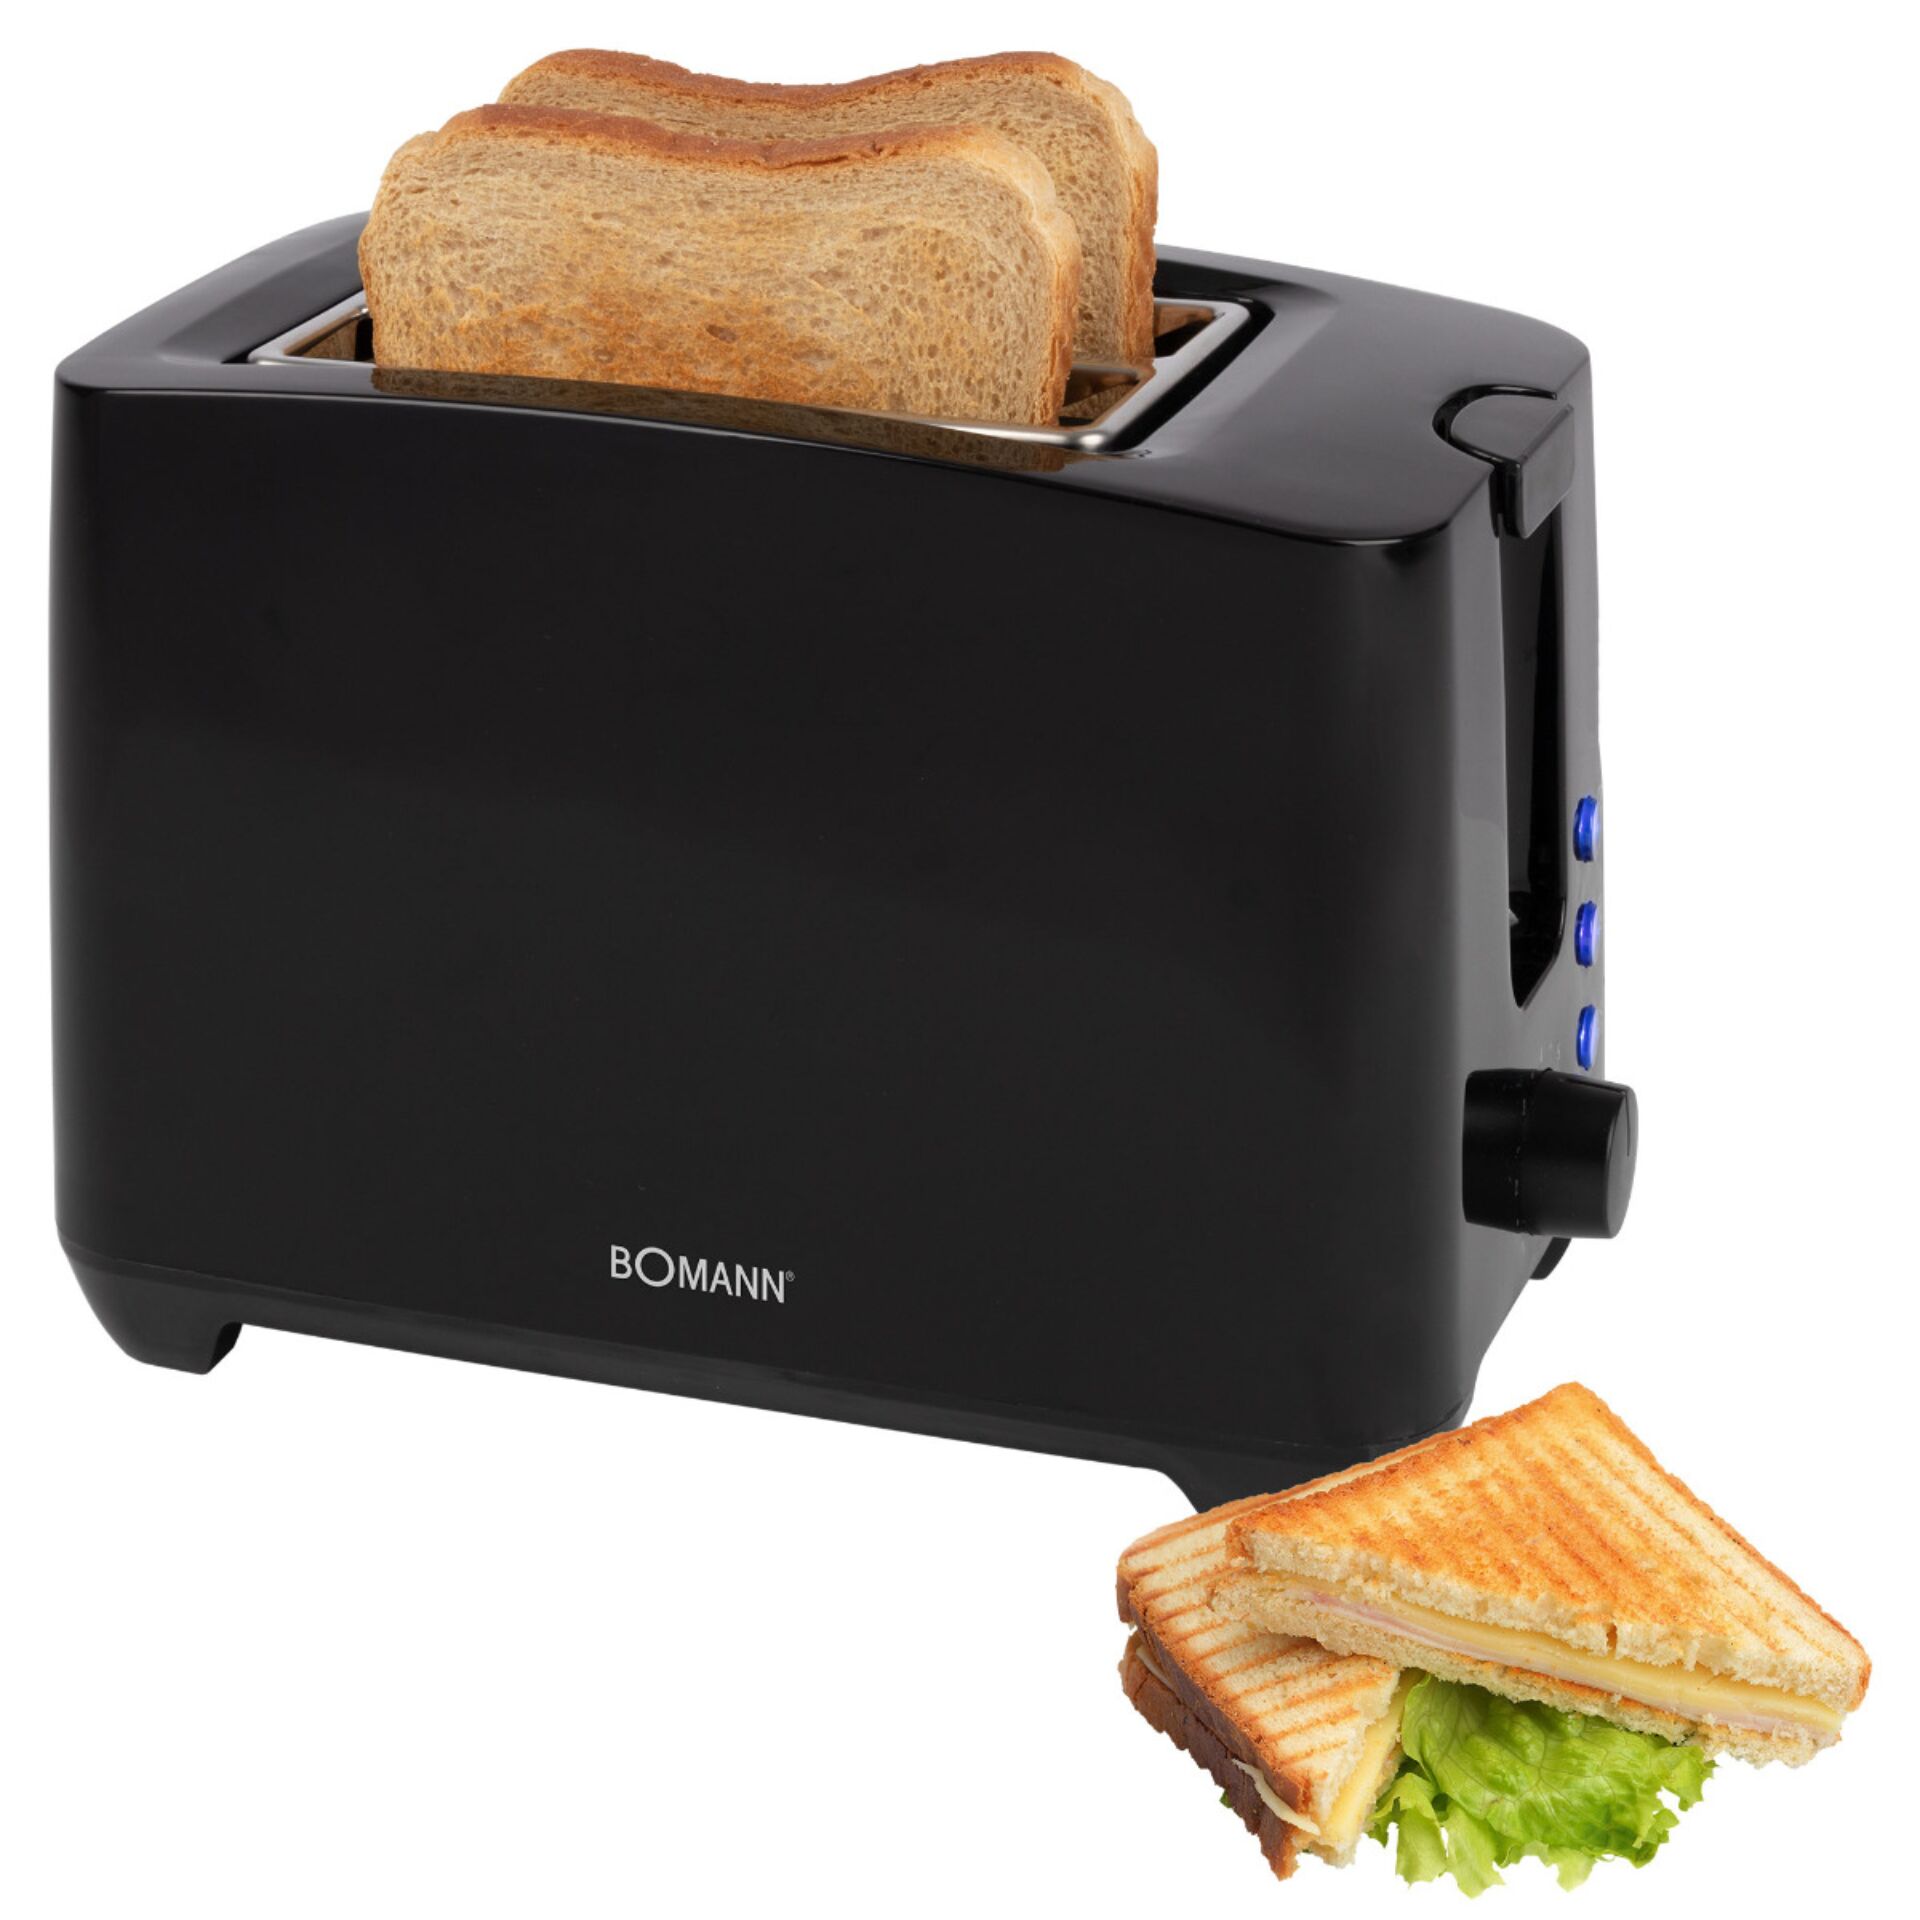 Bomann TA 6065 CB schwarz 2 Scheiben Toaster